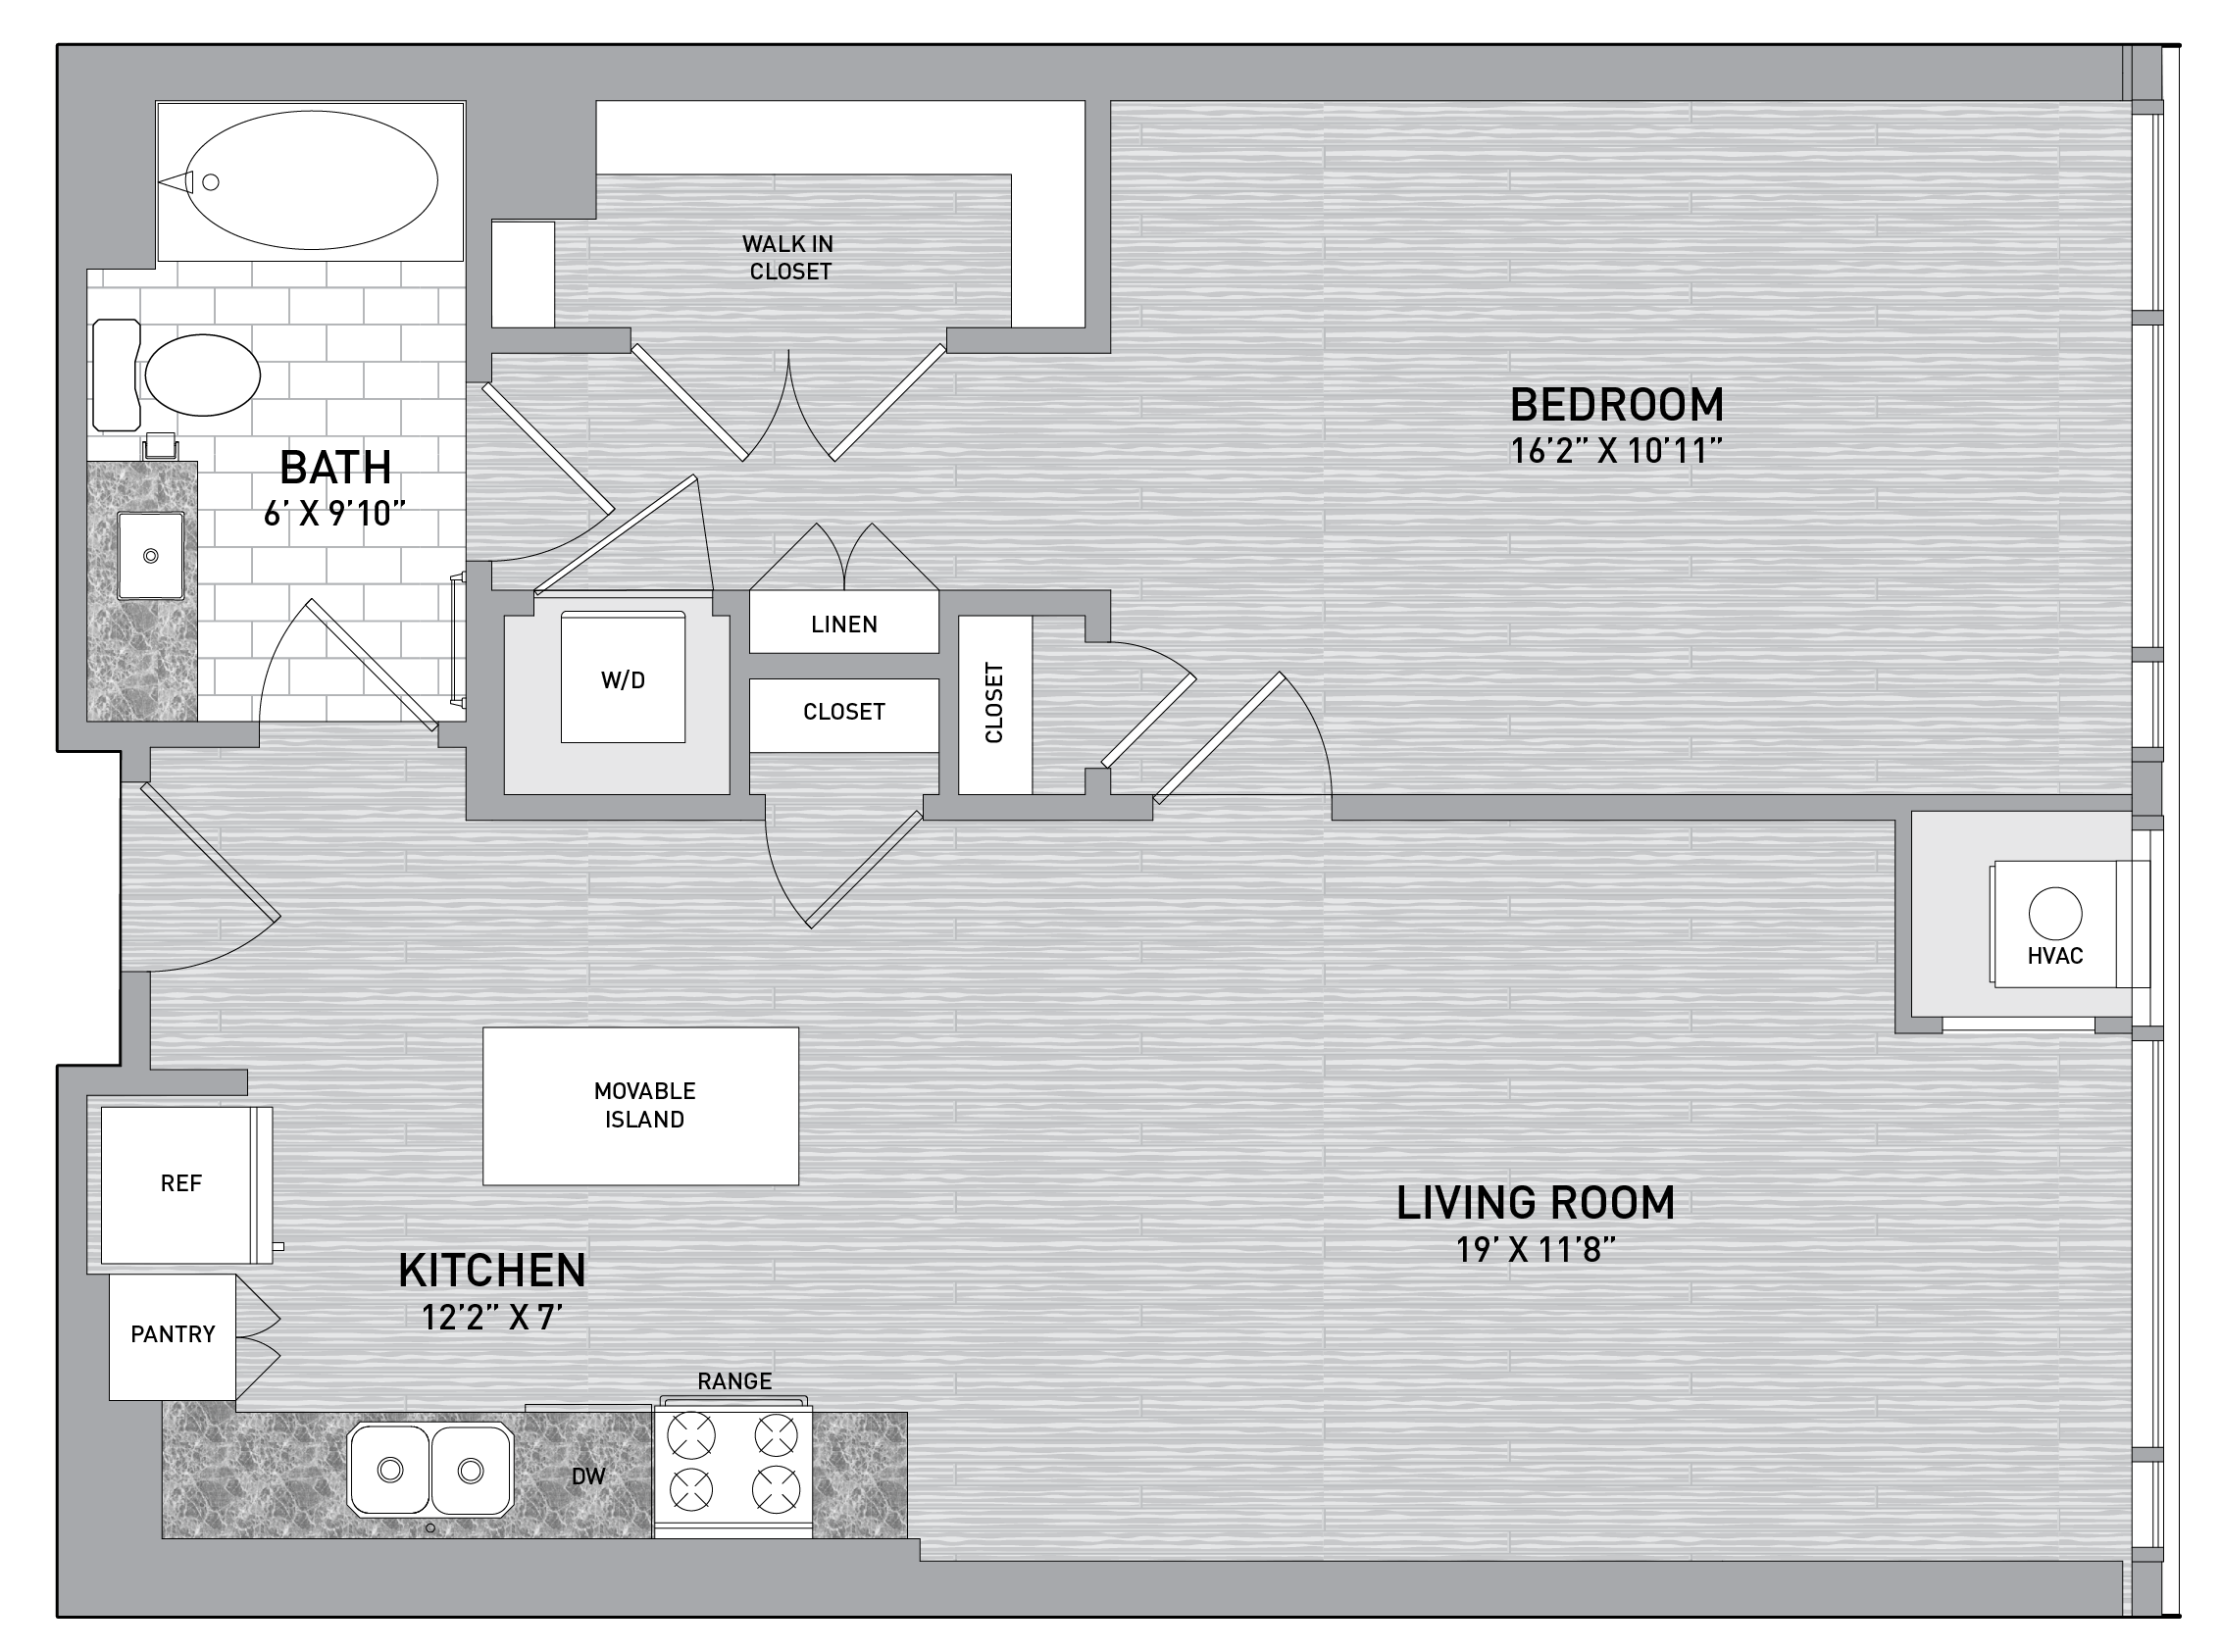 floorplan image of unit id 0703